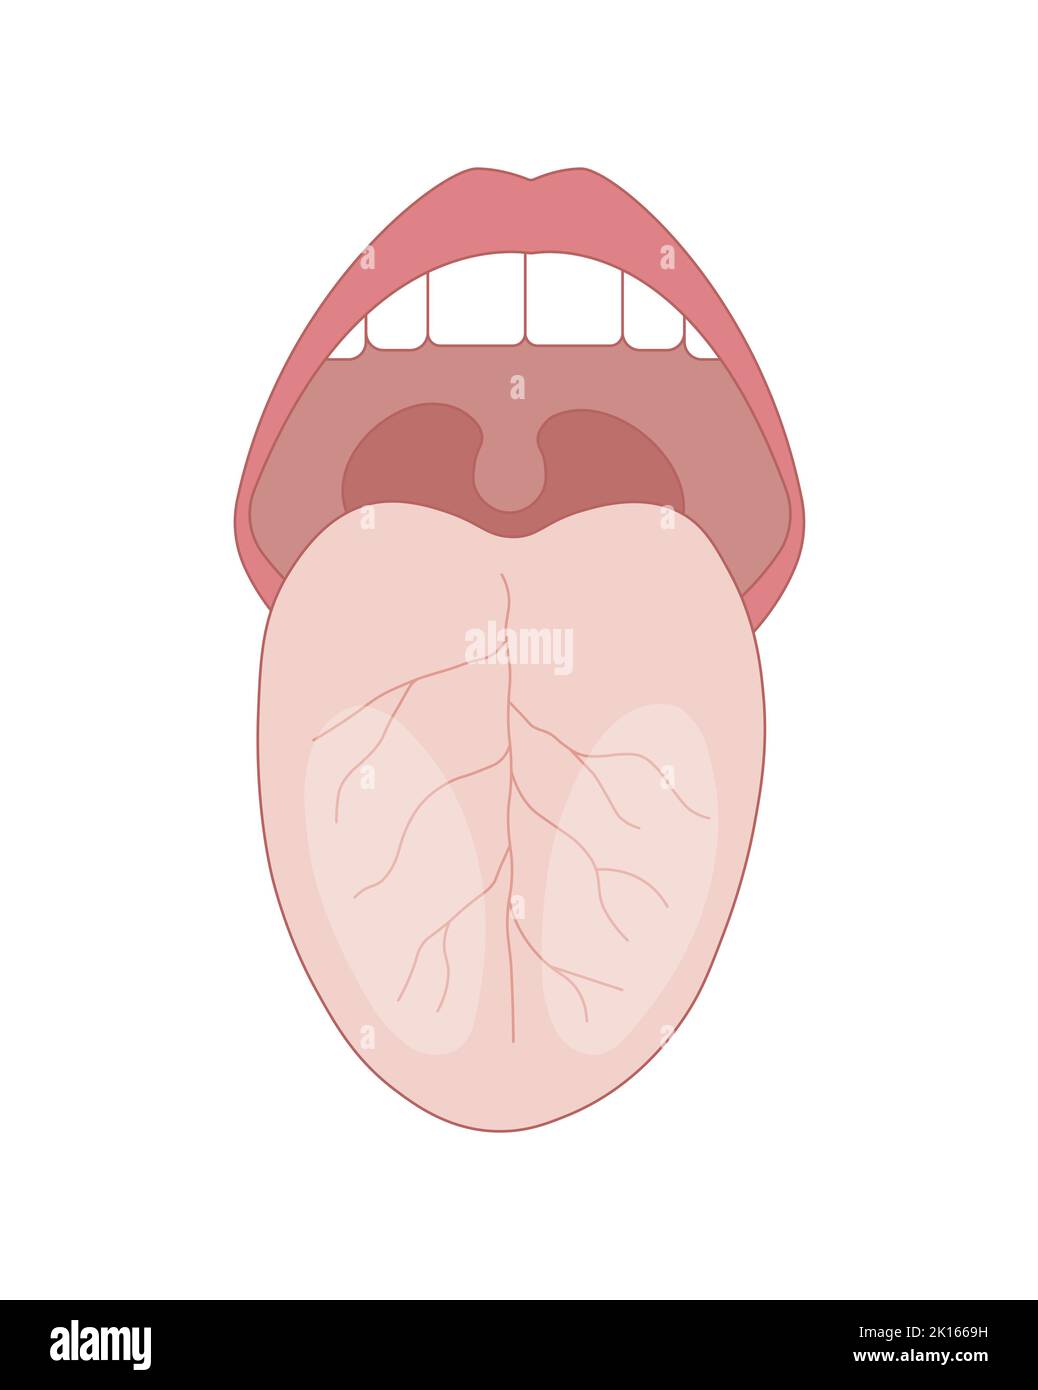 Wissenschaftliche Gestaltung der menschlichen Zungenstruktur. Bunte Symbole. Vektorgrafik. Stock Vektor